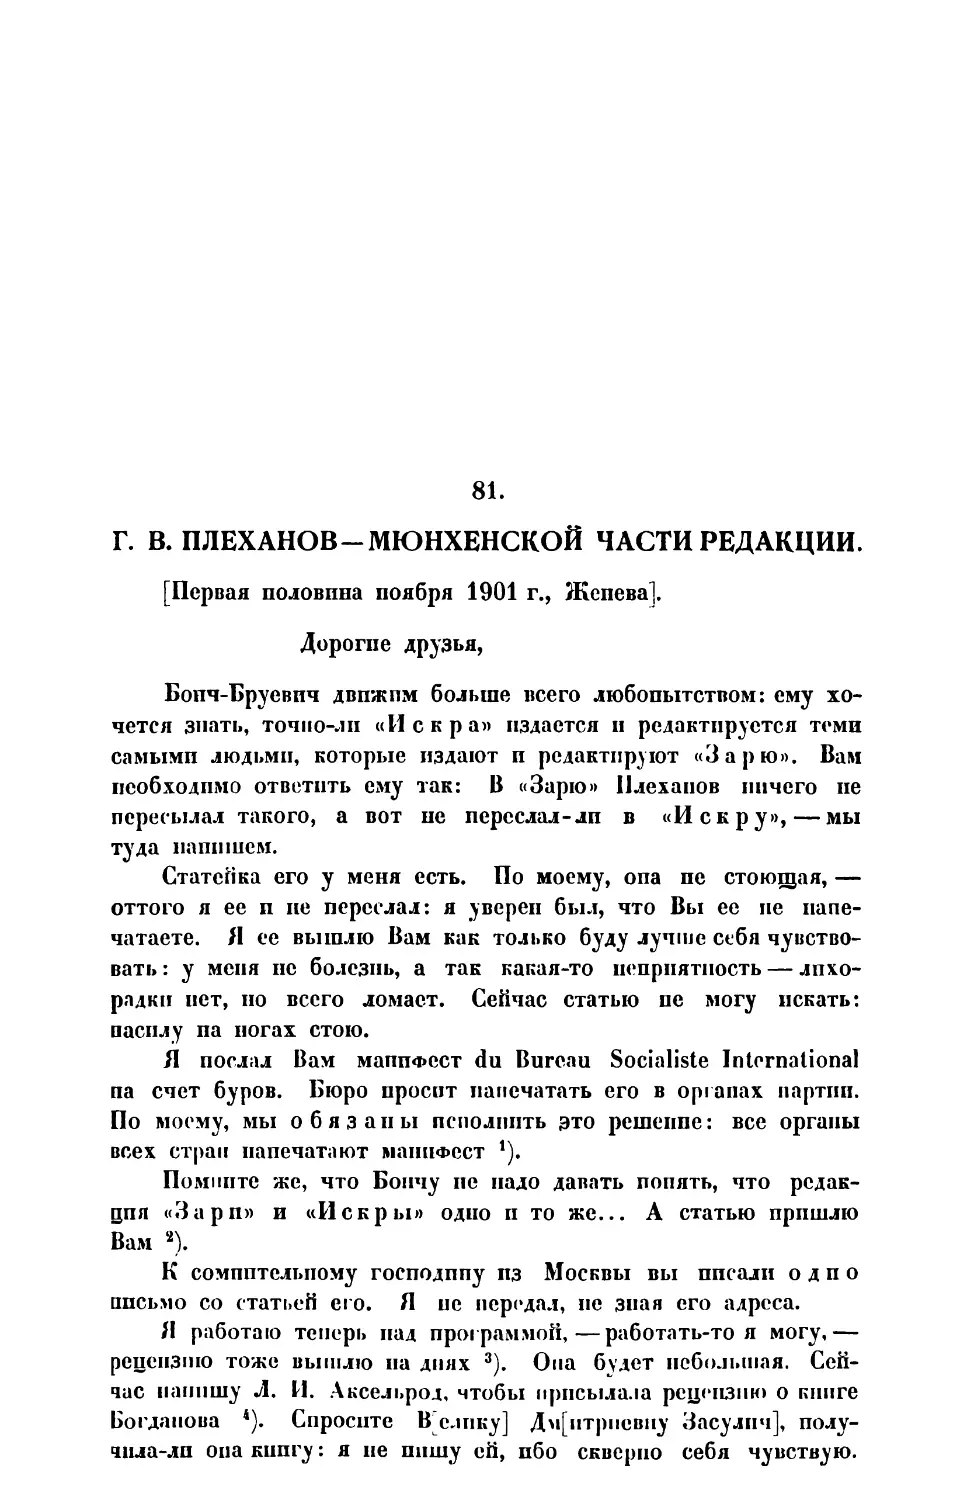 81. Г. В. Плеханов. — Письмо Мюнхенской части редакции первая половина ноября 1901 г.